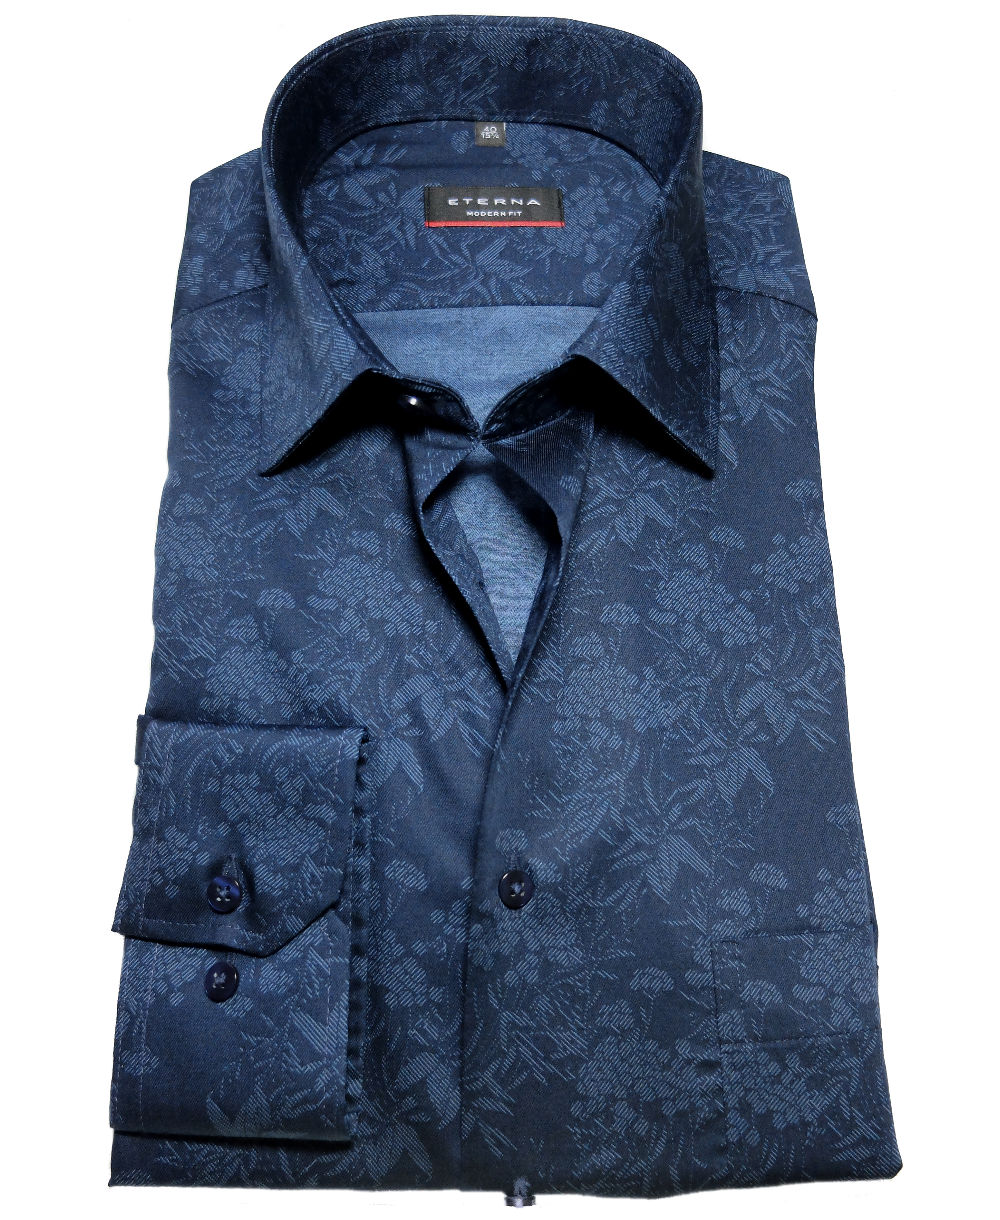 eterna Modern Fit Langarmhemd + Krawatte dunkelblau blau Floralmotiv -  Hochwertige Herrenmode führender Marken zu fairen